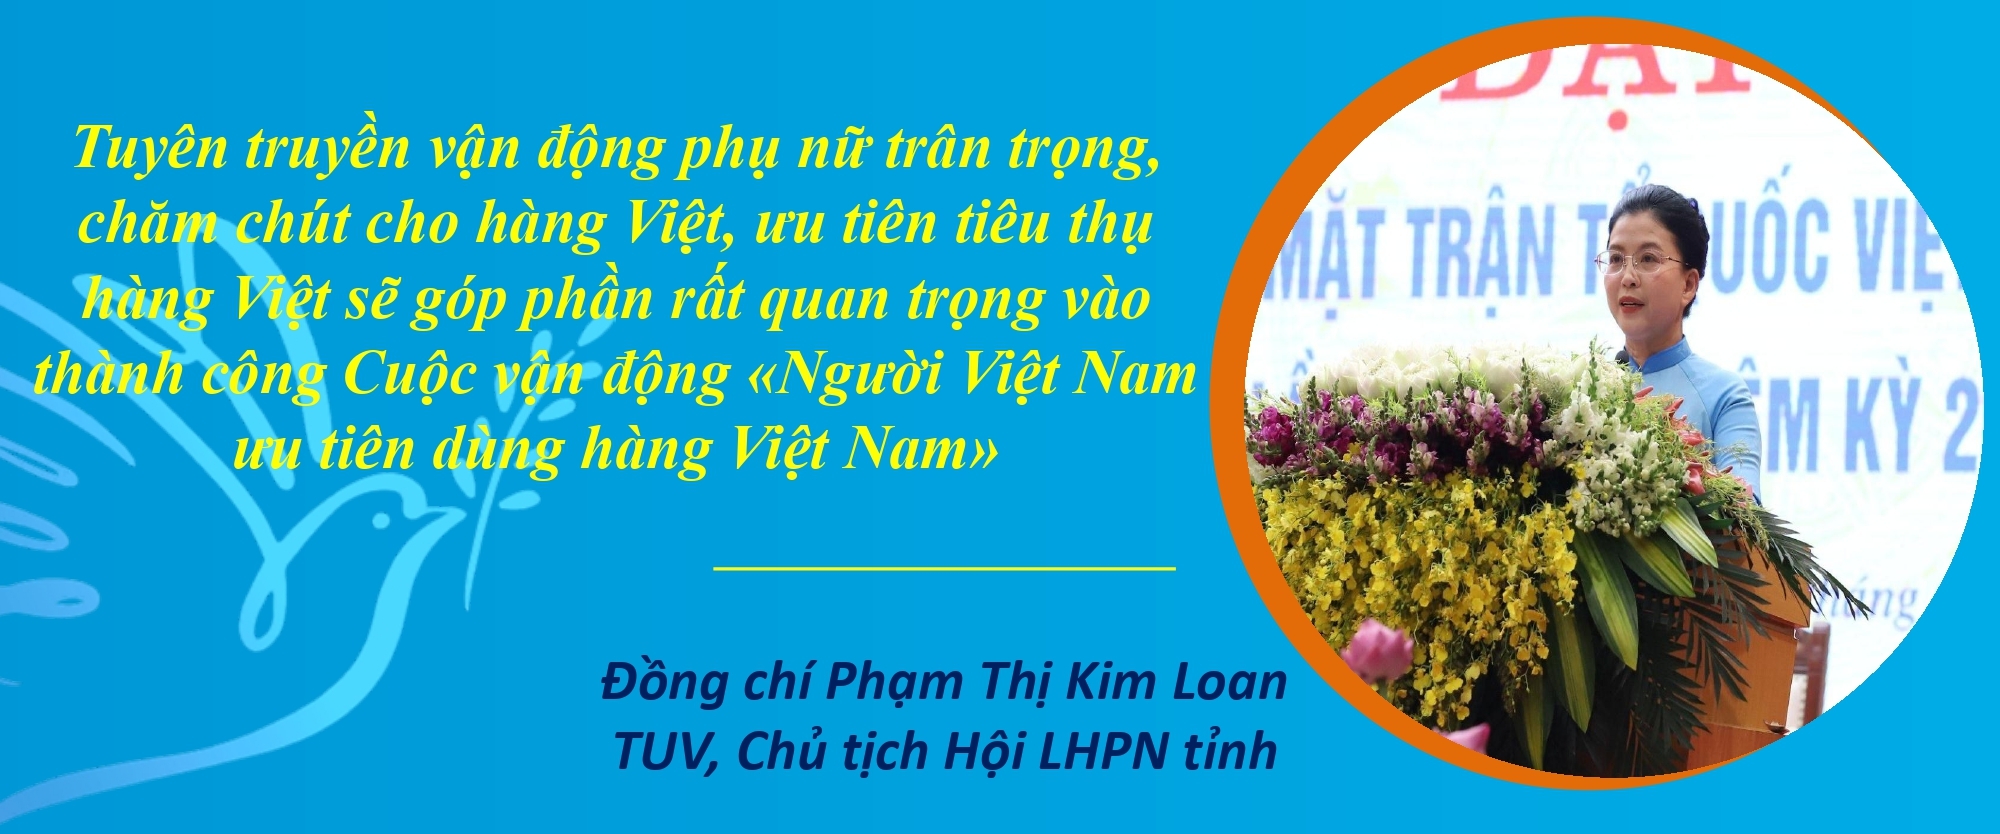 Đẩy mạnh tuyên truyền cán bộ, hội viên phụ nữ tích cực hưởng ứng Cuộc vận động “Người Việt Nam ưu tiên dùng hàng Việt Nam”